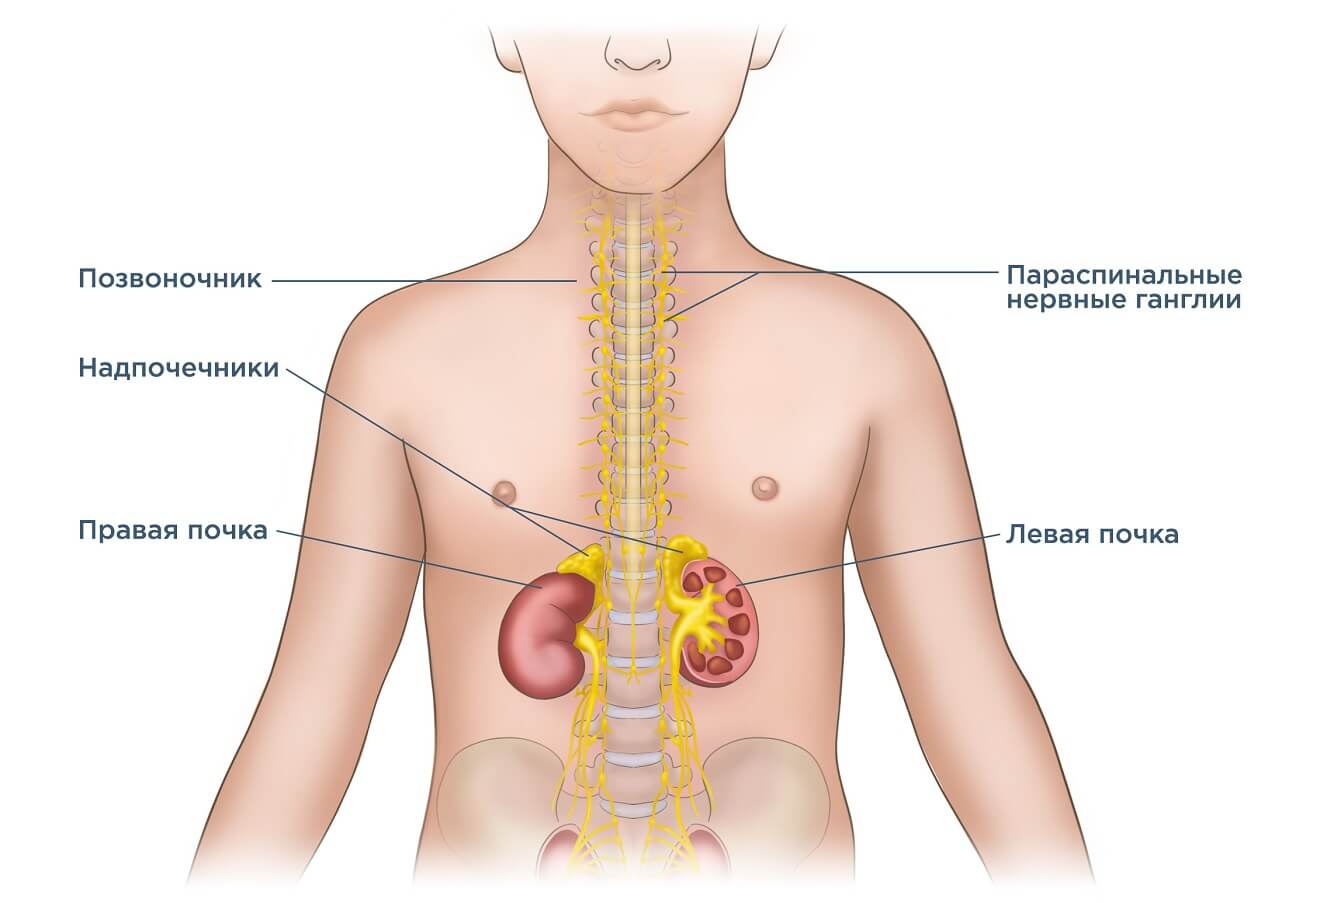 Даниэльза — лекарство против нейробластомы. Нейробластома может возникнуть в разных частях тела. Источник фото: neuroblastoma.help. Фото.